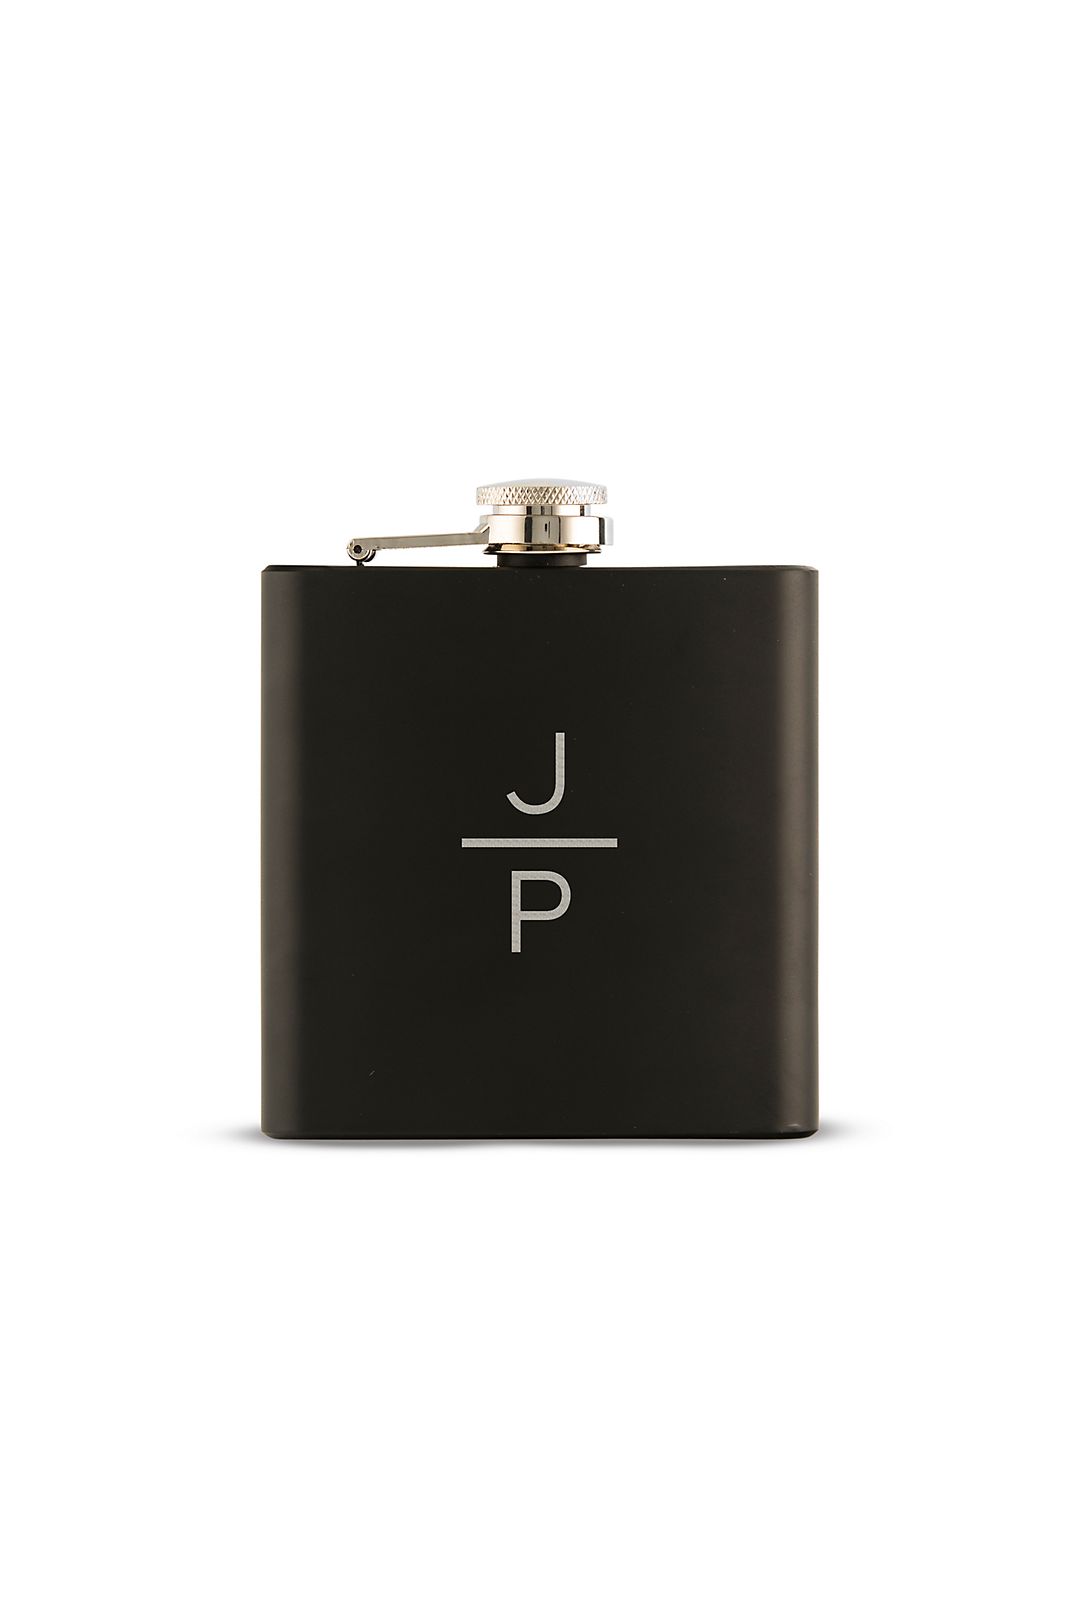 Personalized Stacked Monogram Black Coated Flask Image 1